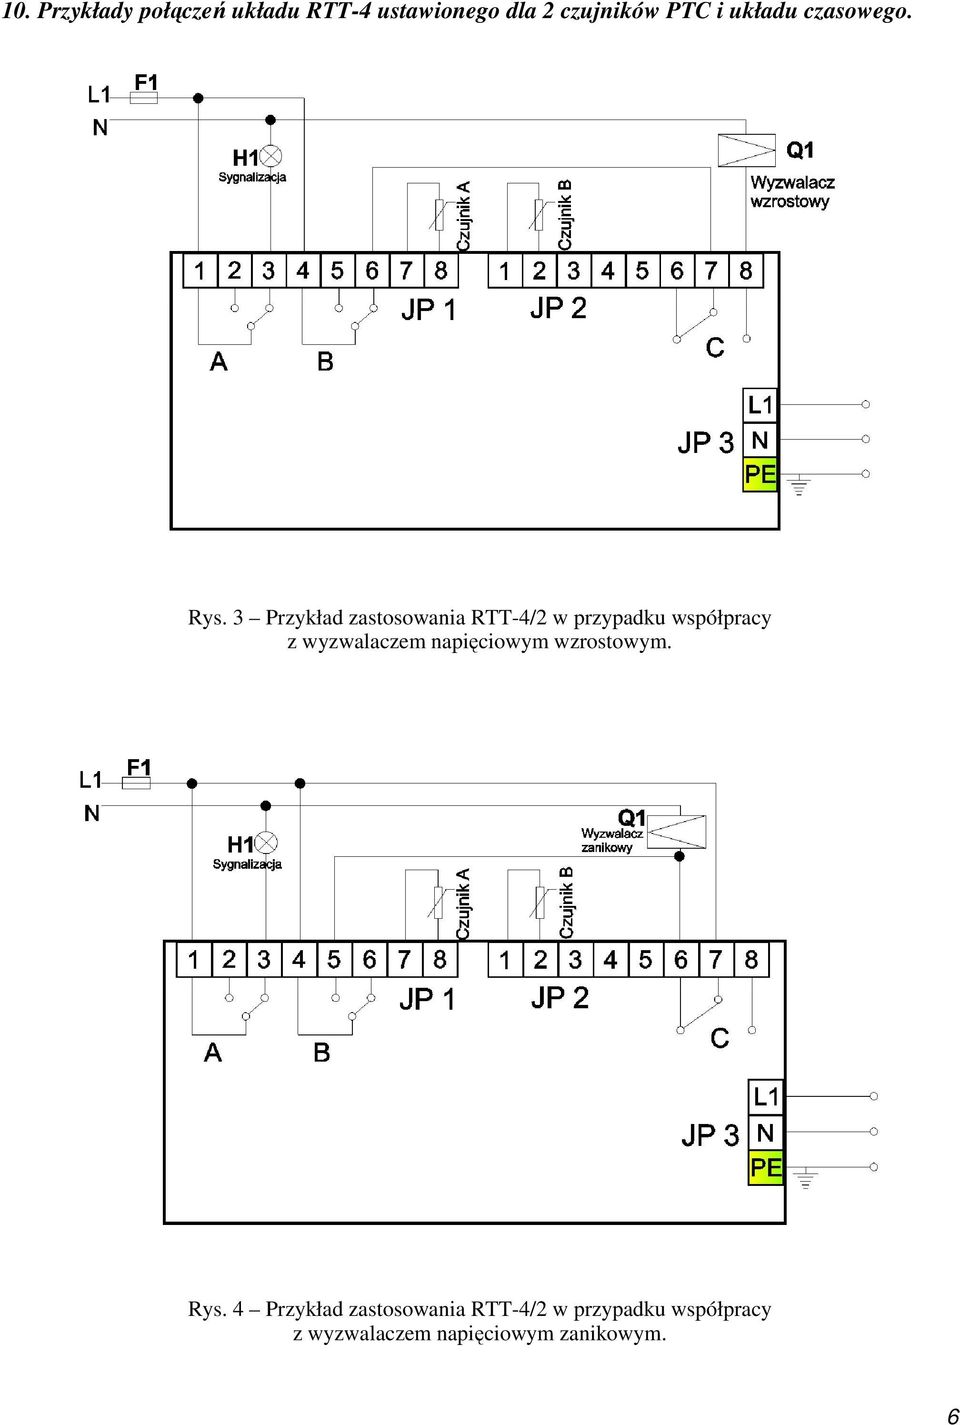 3 Przykład zastosowania RTT-4/2 w przypadku współpracy z wyzwalaczem